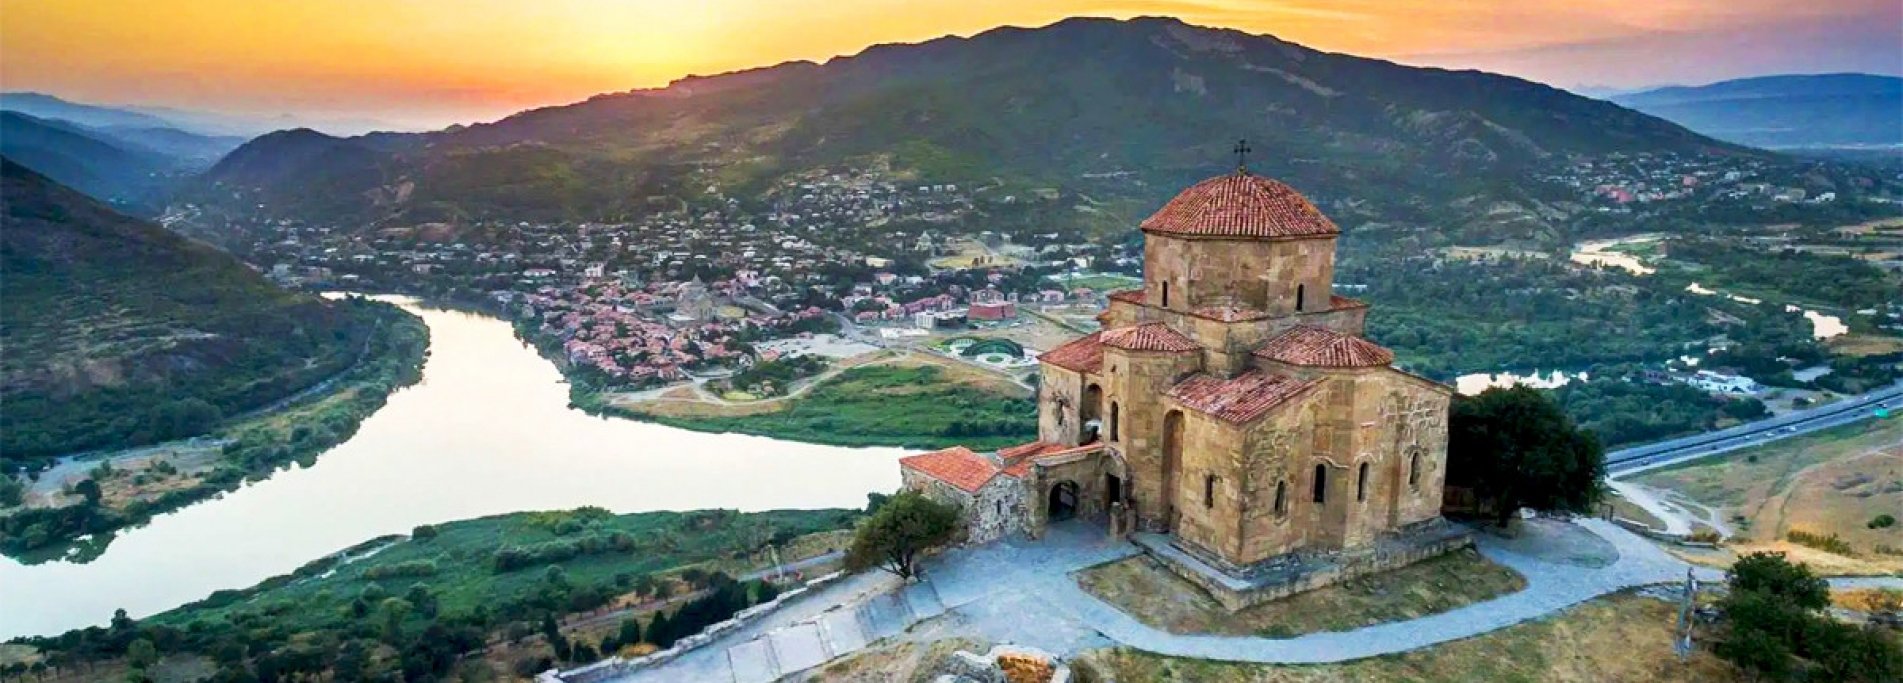 Откройте для себя Армению и Грузию - Ереван, Тбилиси и архитектурные памятники двух стран